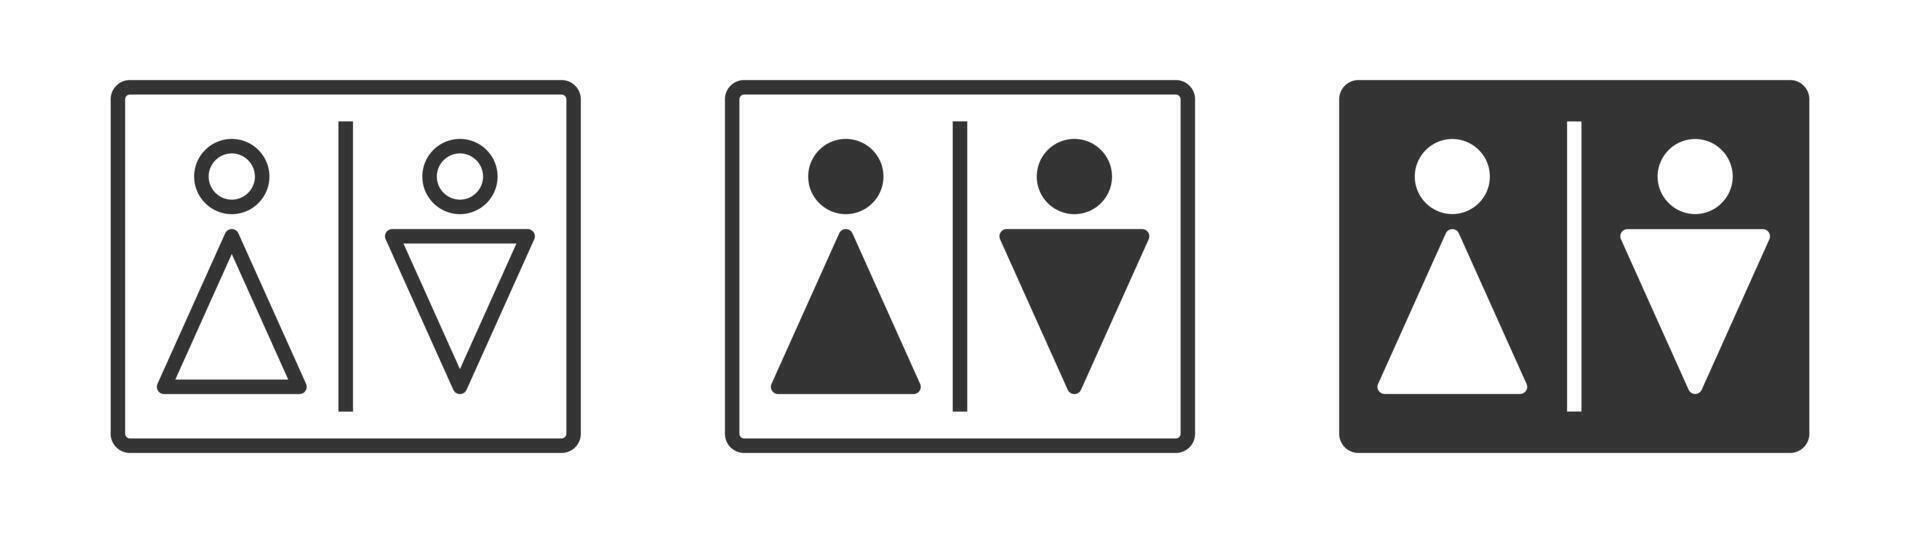 Mens en vrouw toilet icoon. vector illustratie.